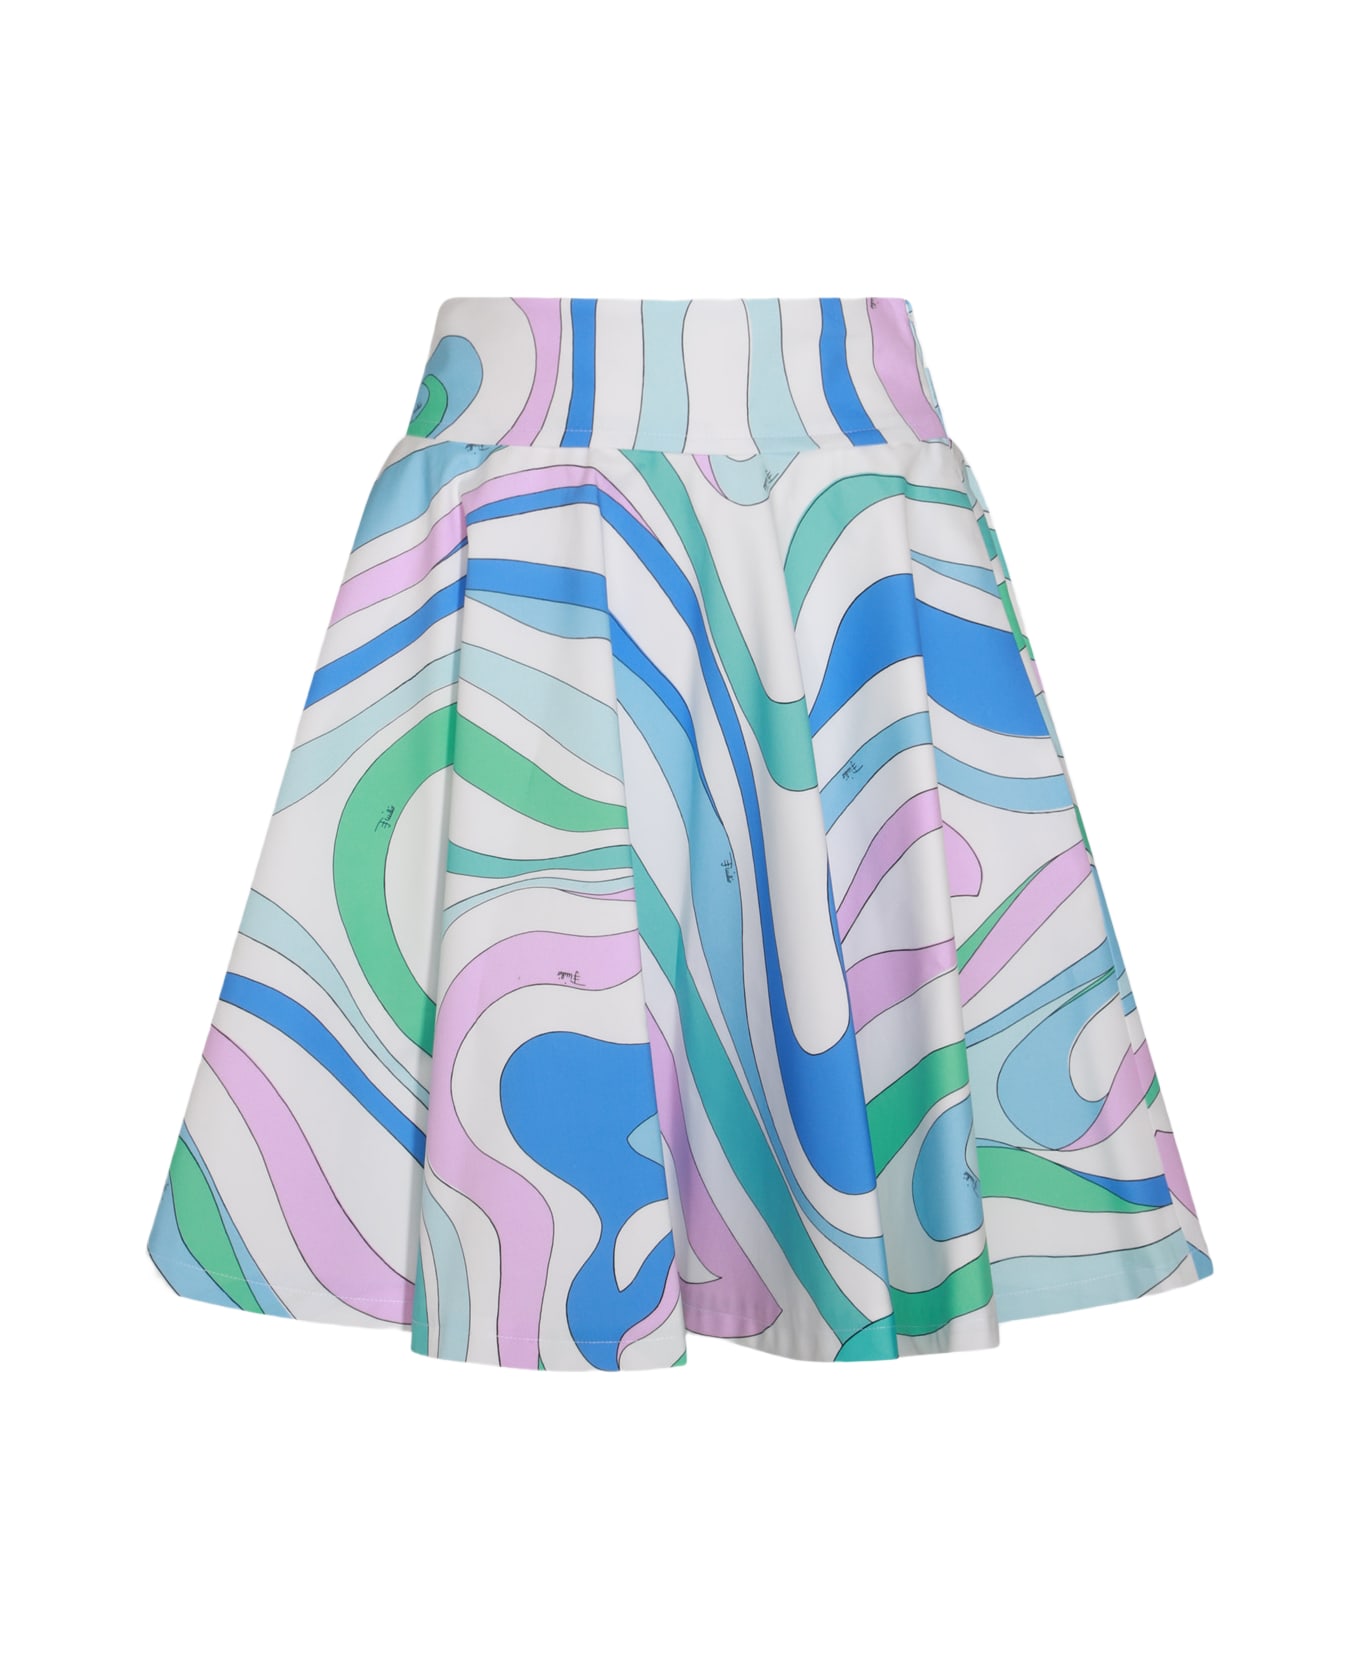 Pucci Multicolot Cotton Midi Skirt - CELESTE/BIANCO